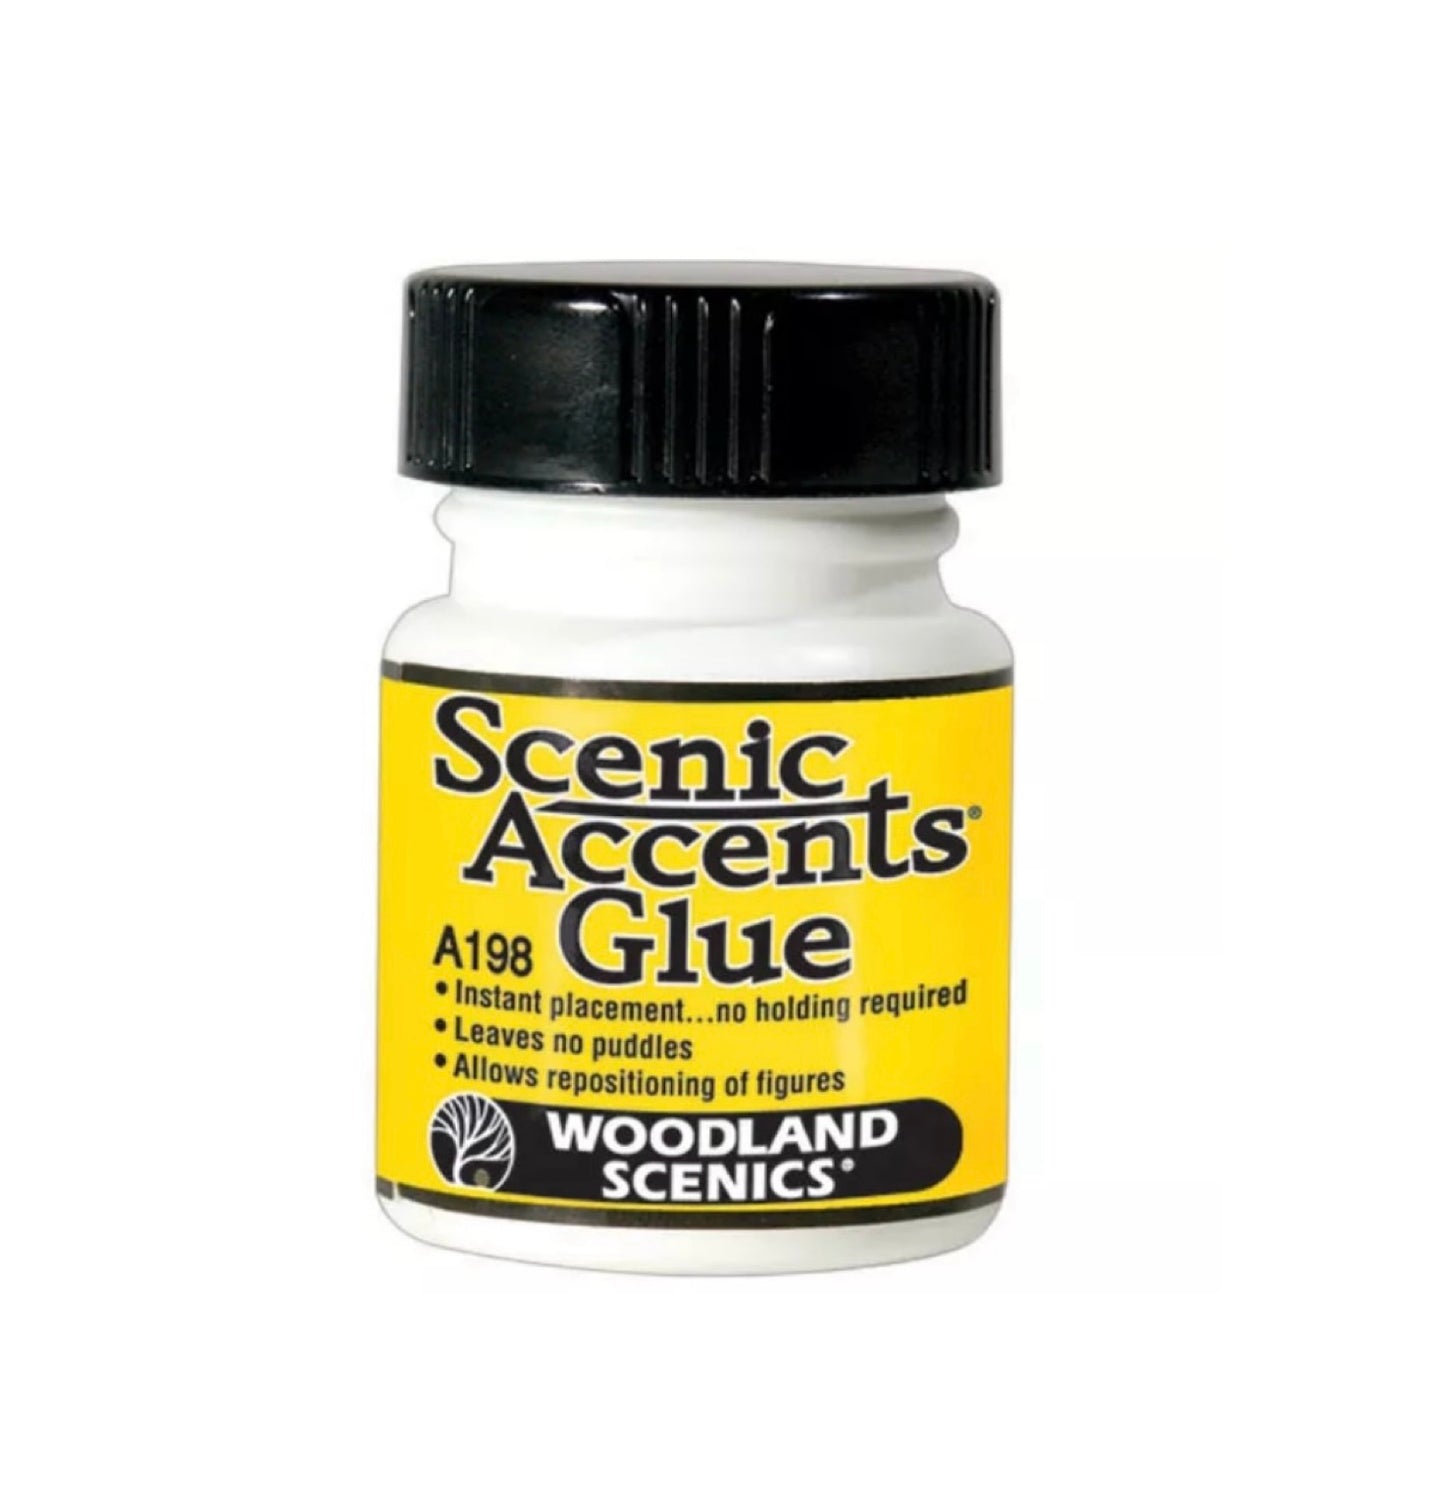 A198 - Scenic Accents Glue, 1.25 fl oz